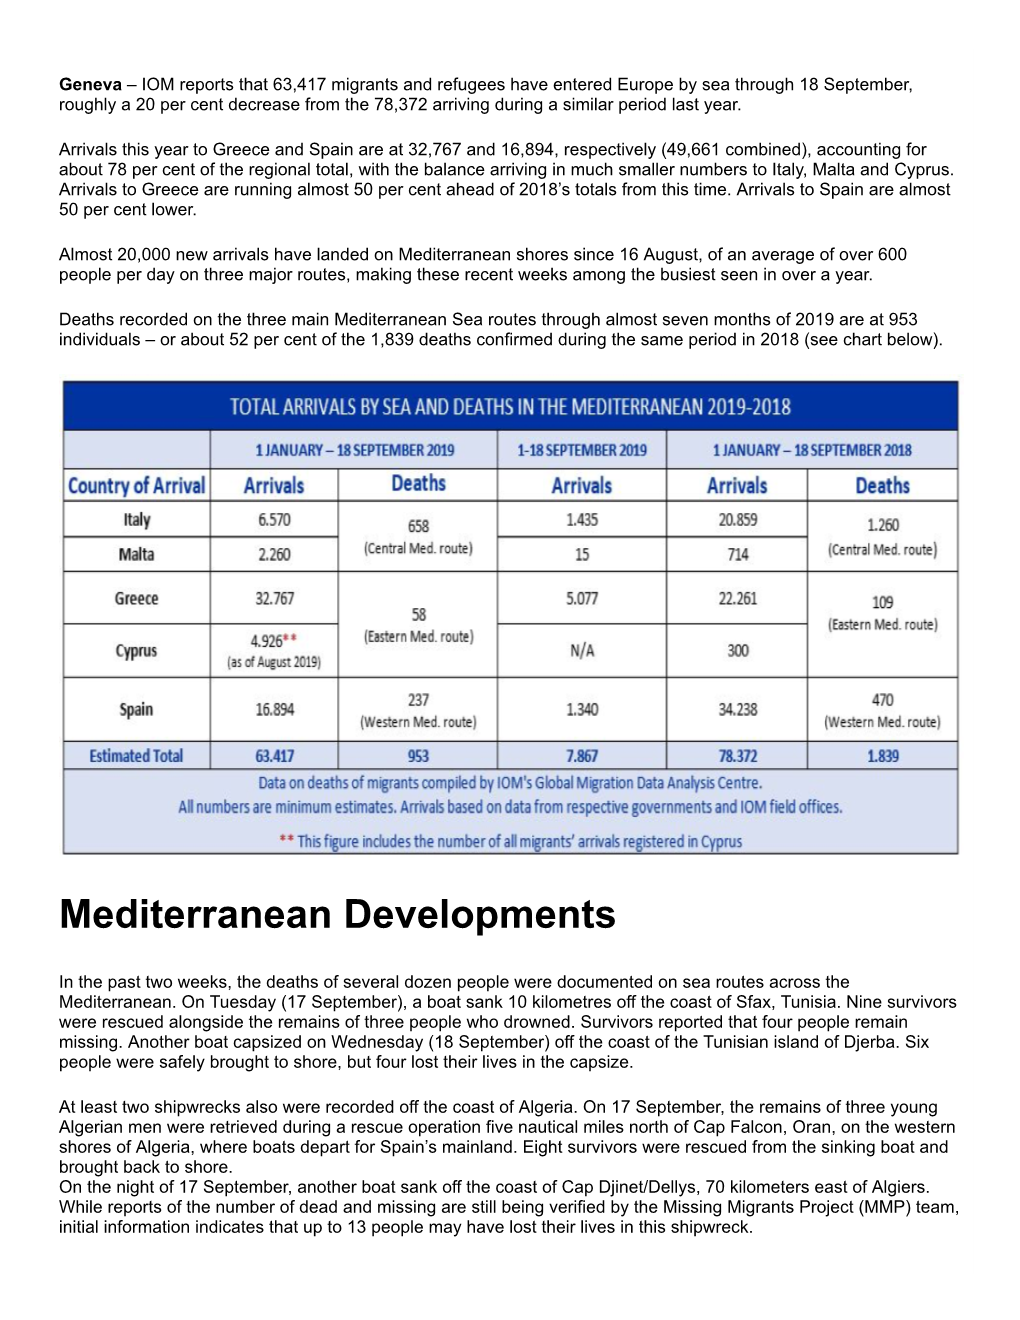 Mediterranean Developments